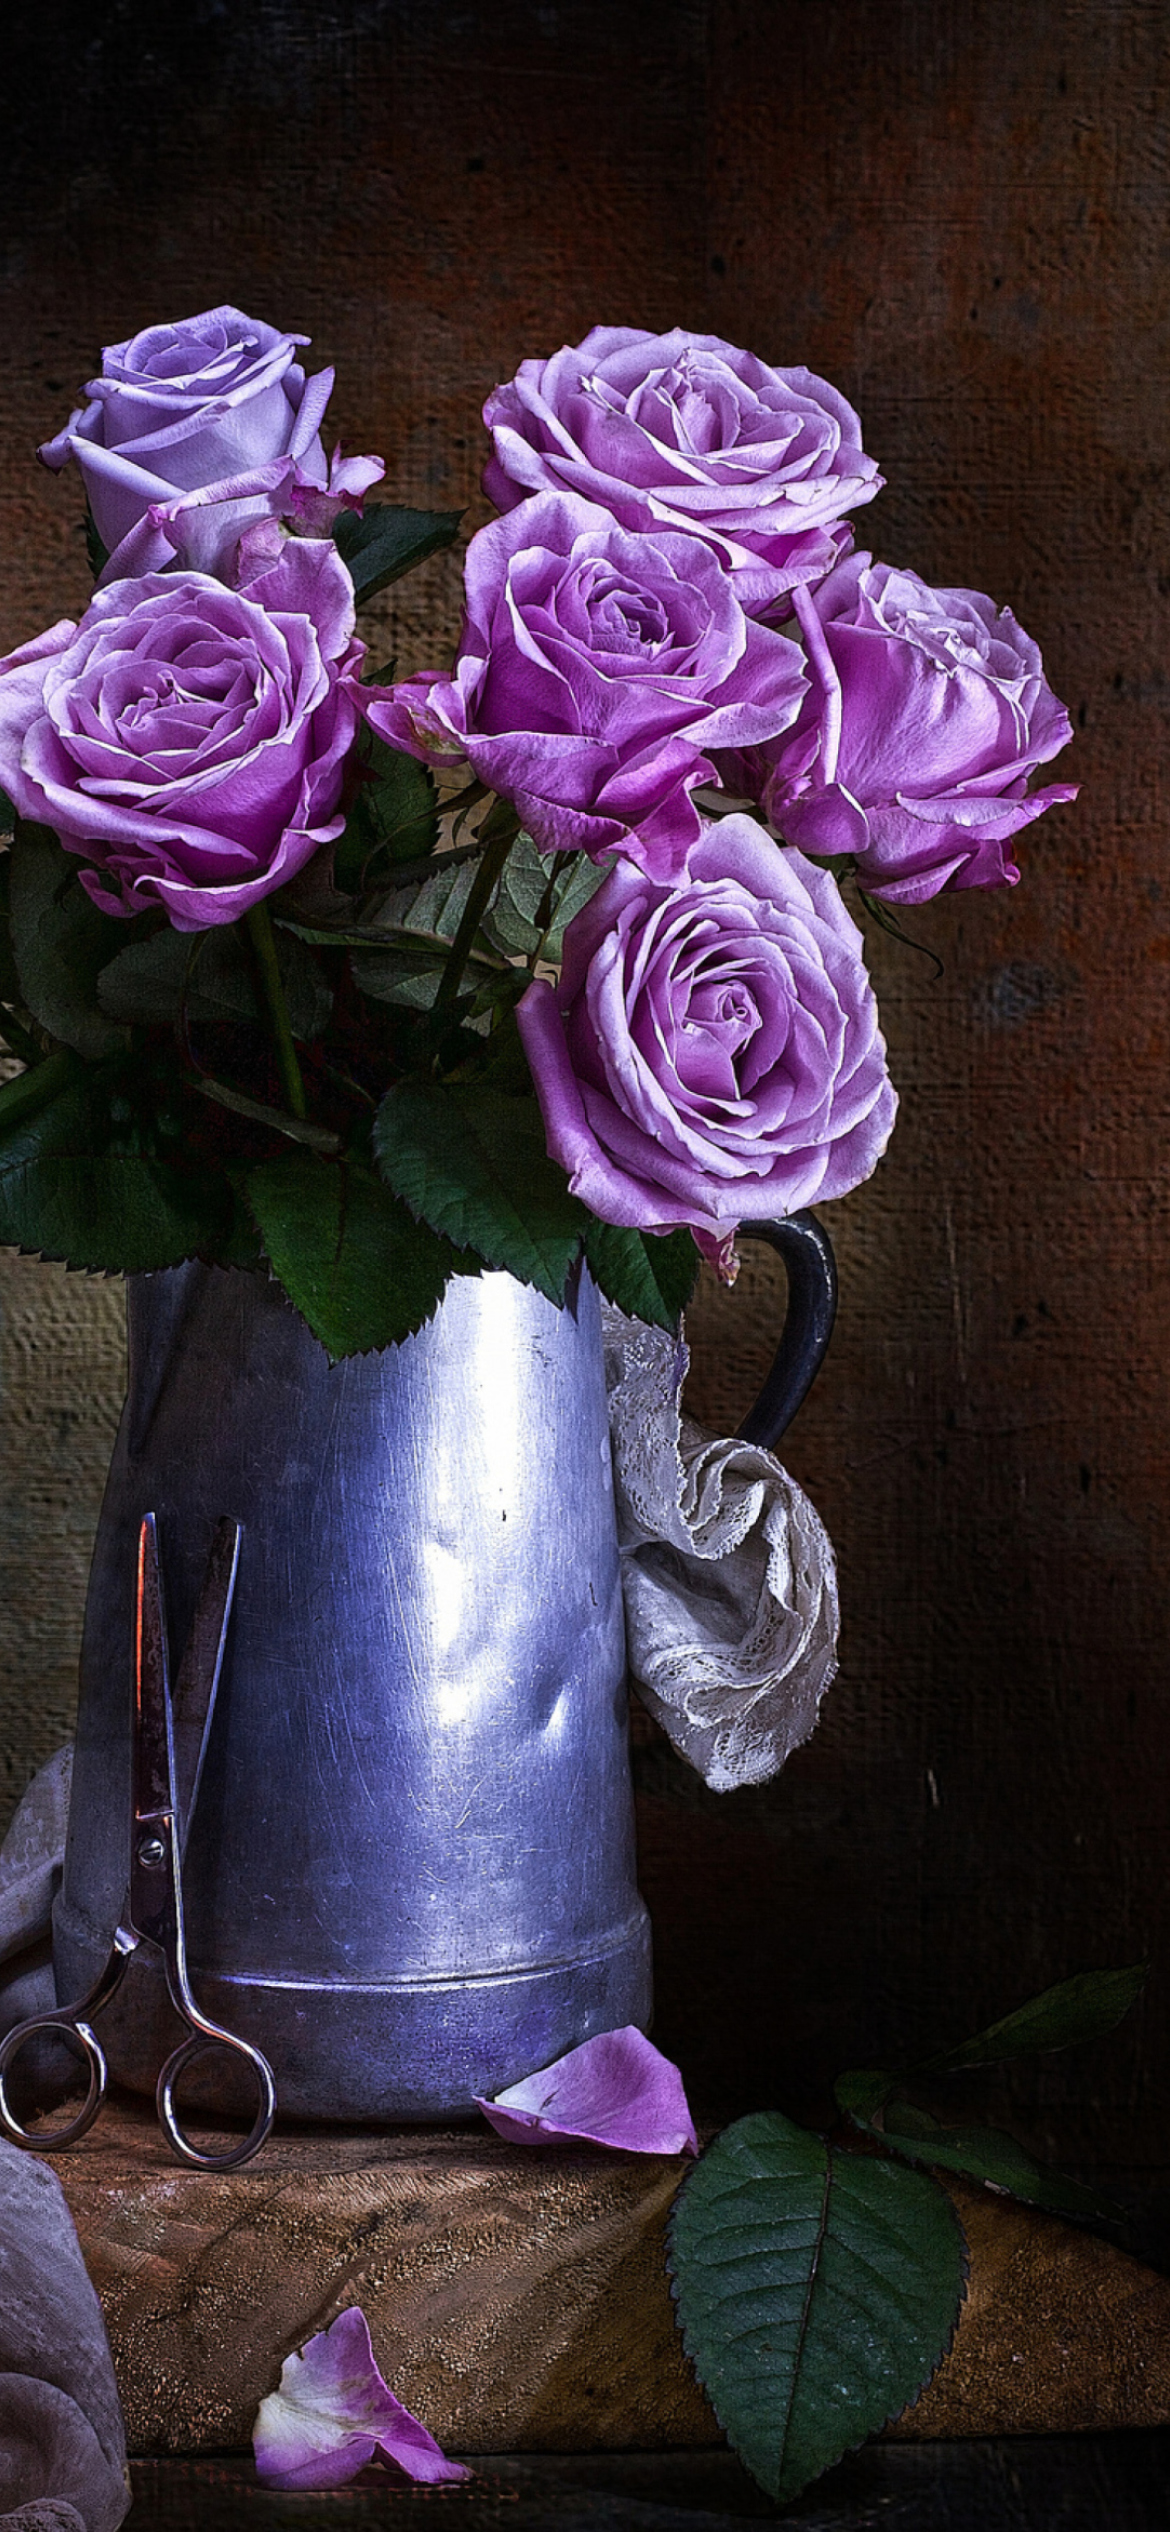 Das Purple Roses Bouquet Wallpaper 1170x2532